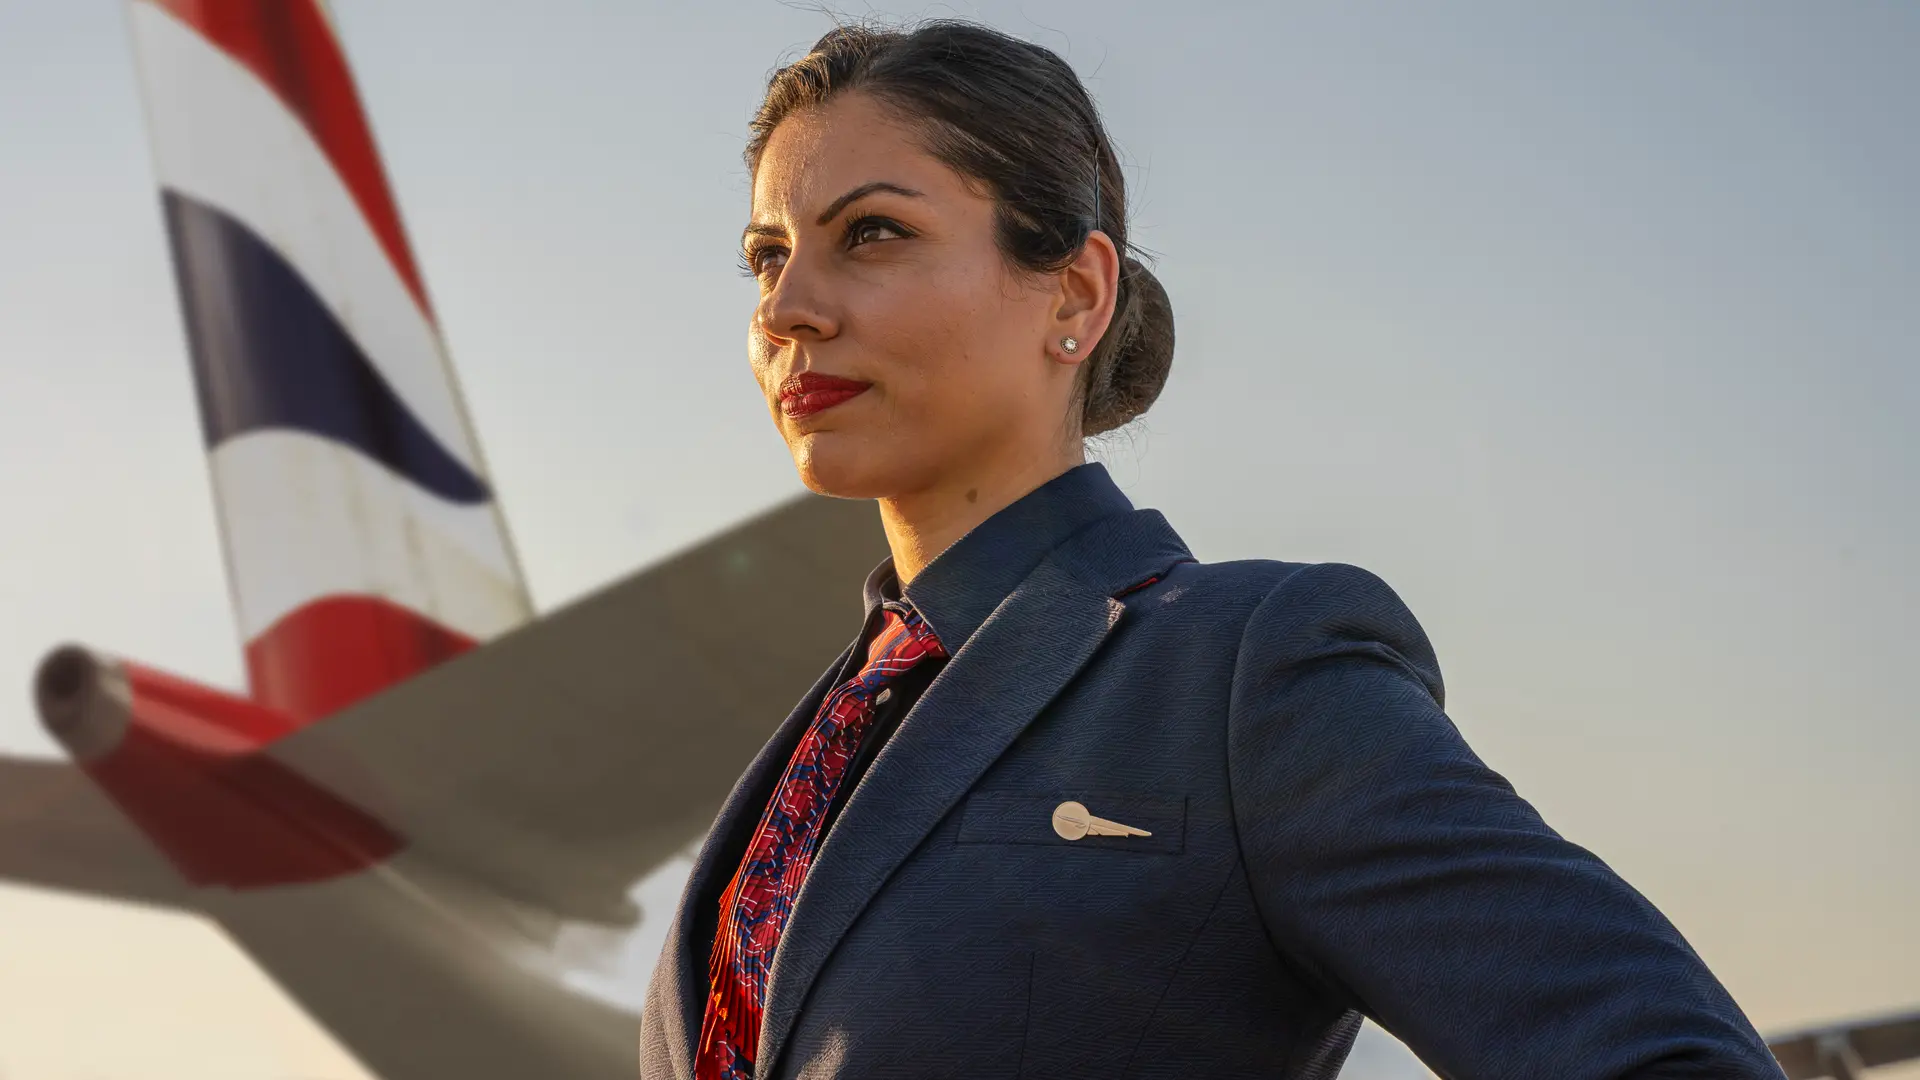 Airlines News - British Airways parades new uniforms